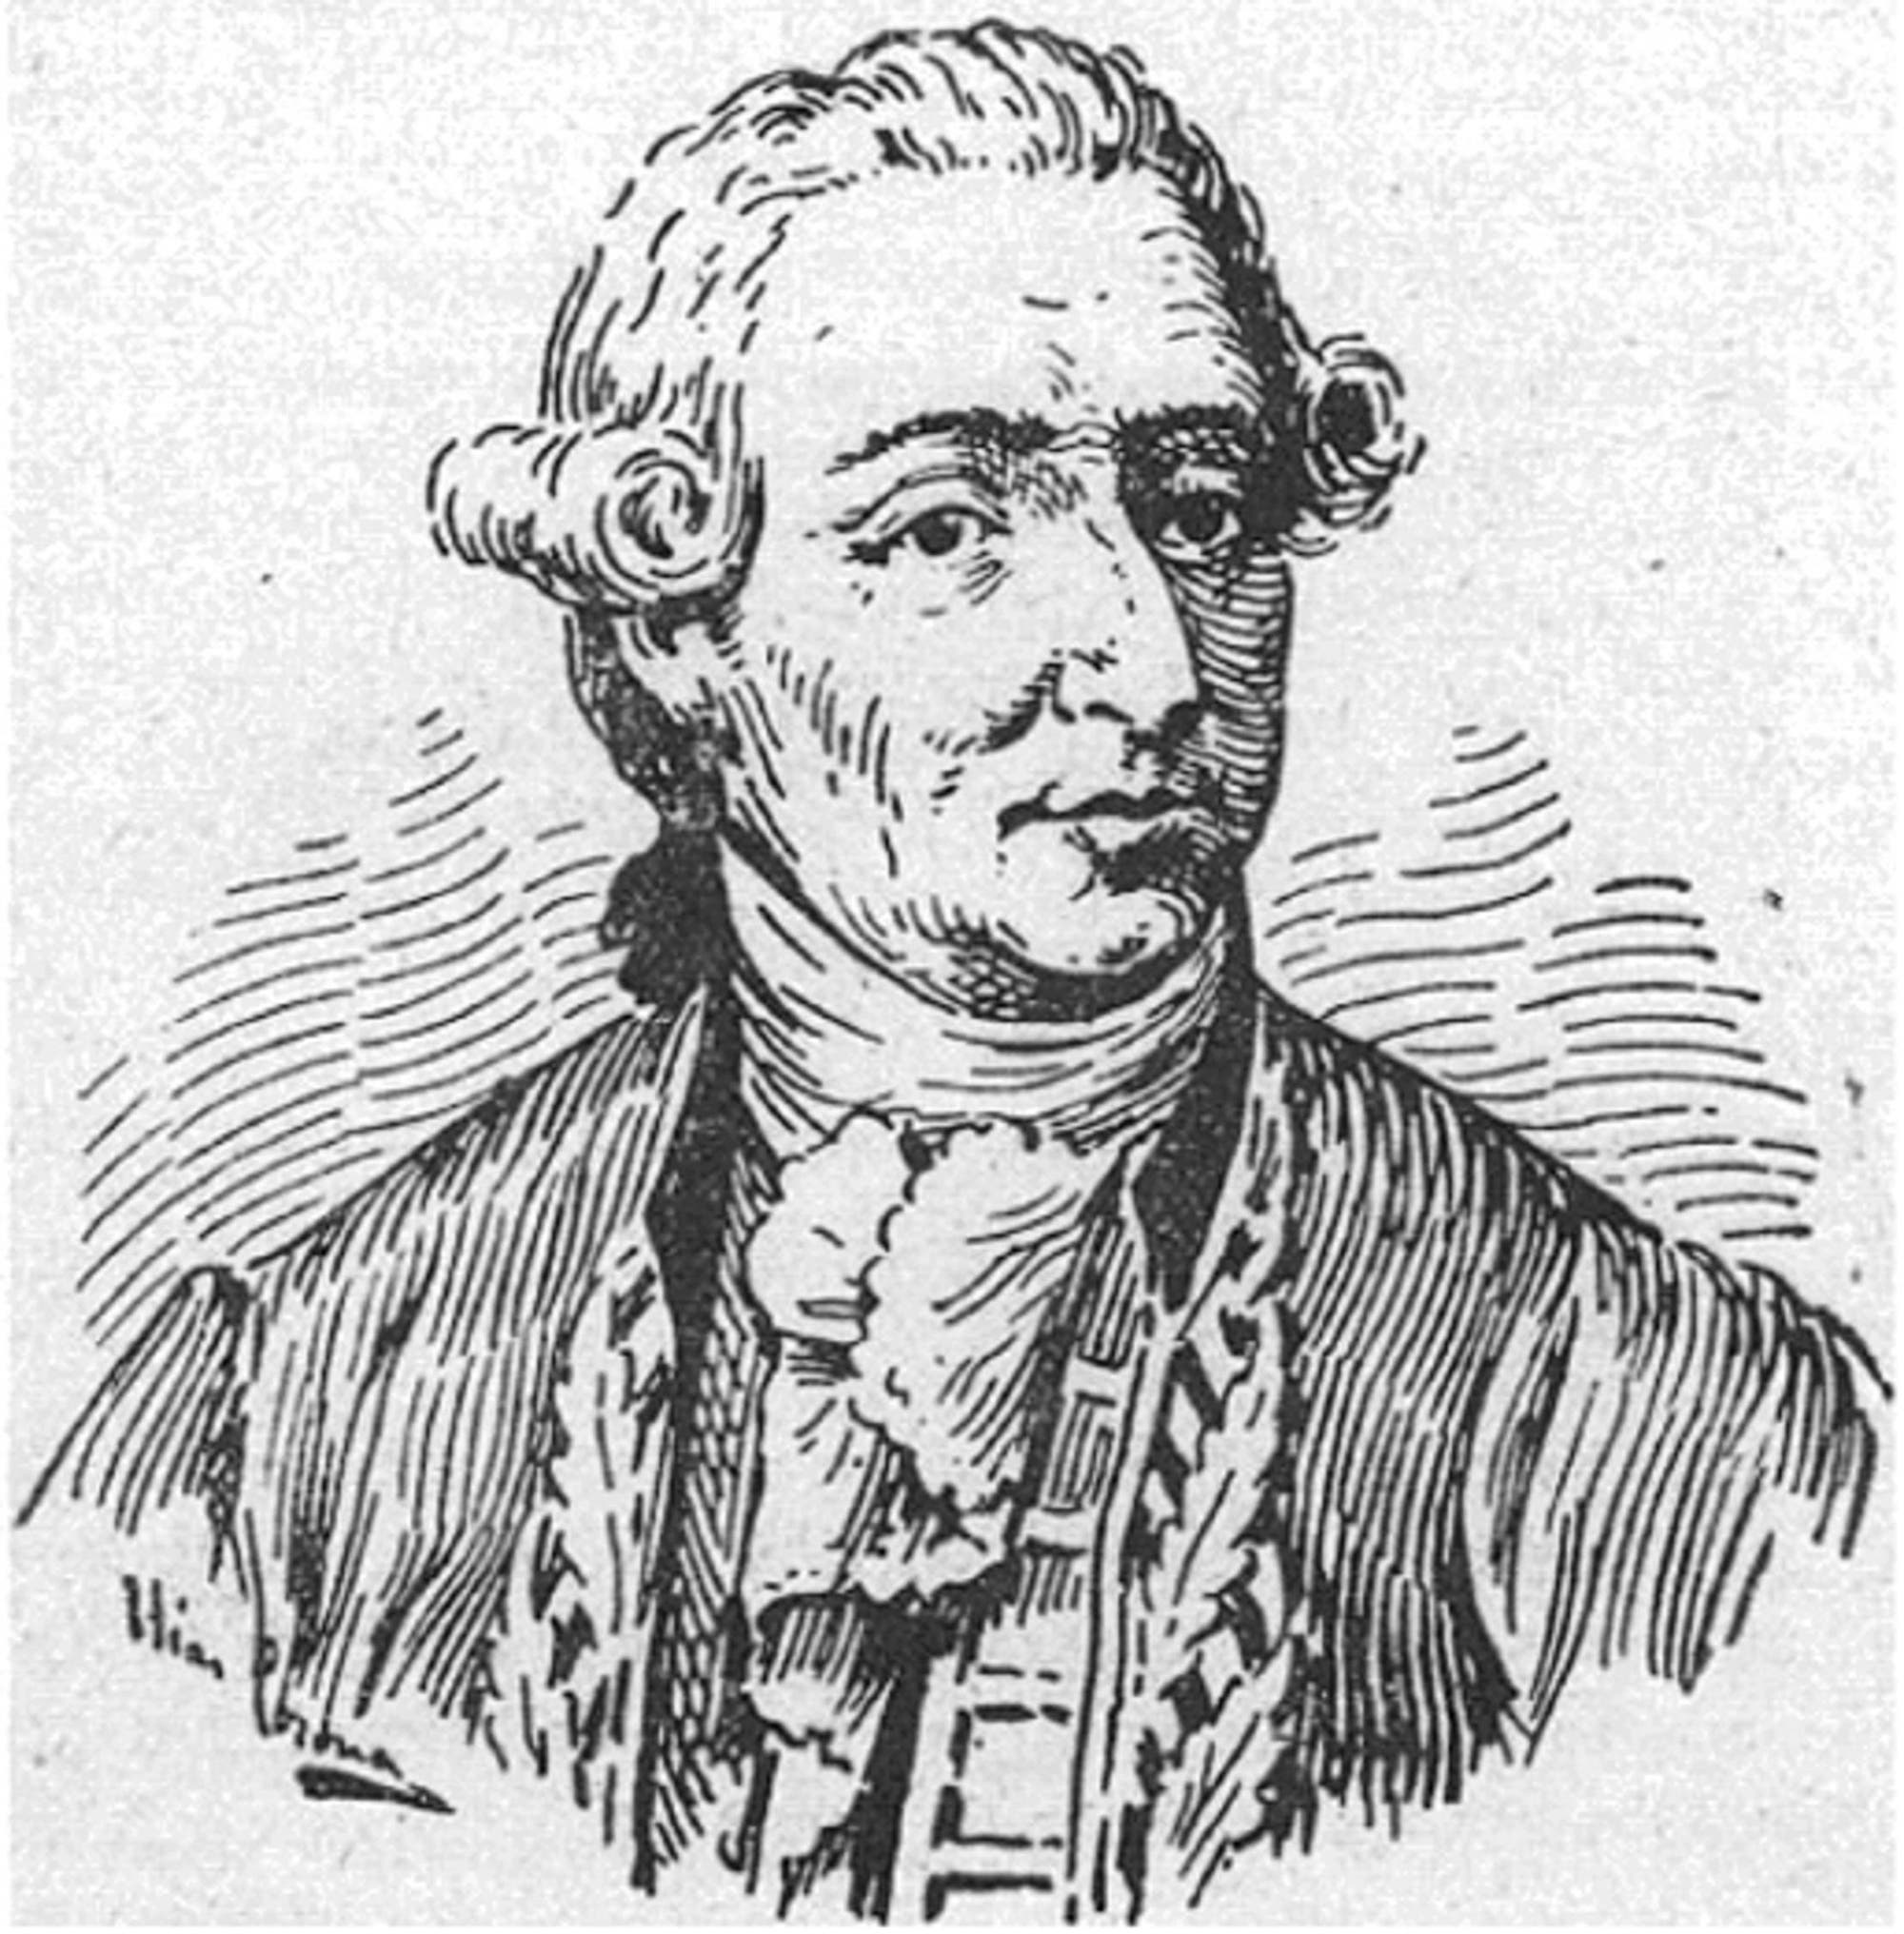 Francisco Javier de Balmis